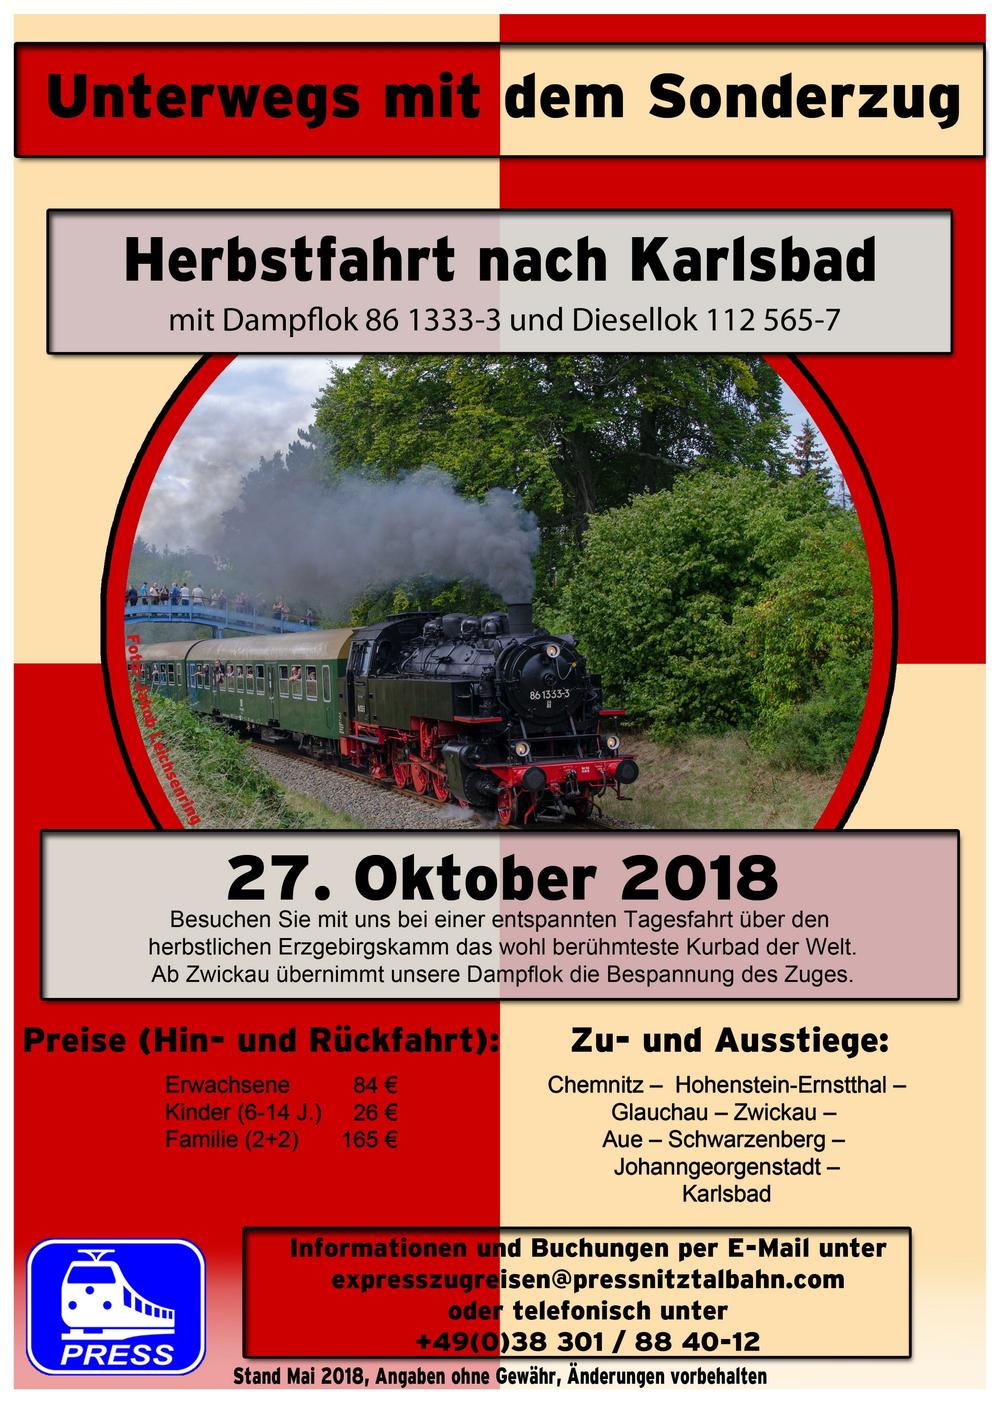 Veranstaltungsankündigung Herbstfahrt nach Karlsbad mit Dampflok 86 1333-3 und Diesellok 112 565-7 am 27. Oktober 2018